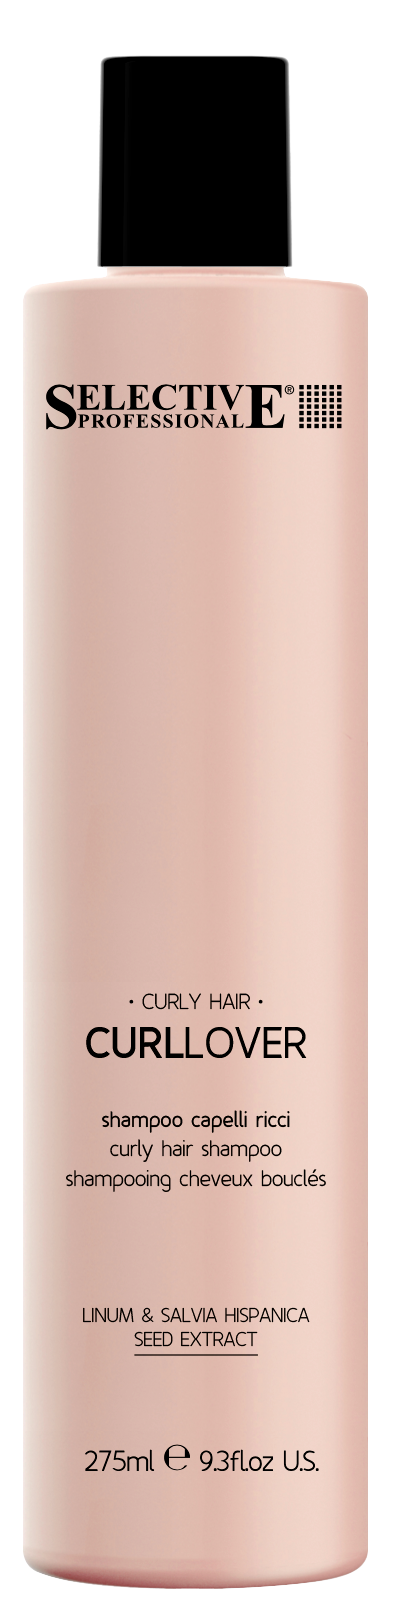 Шампуни для волос:  SELECTIVE PROFESSIONAL -  Шампунь  для вьющихся волос CURLLOVER (275 мл)